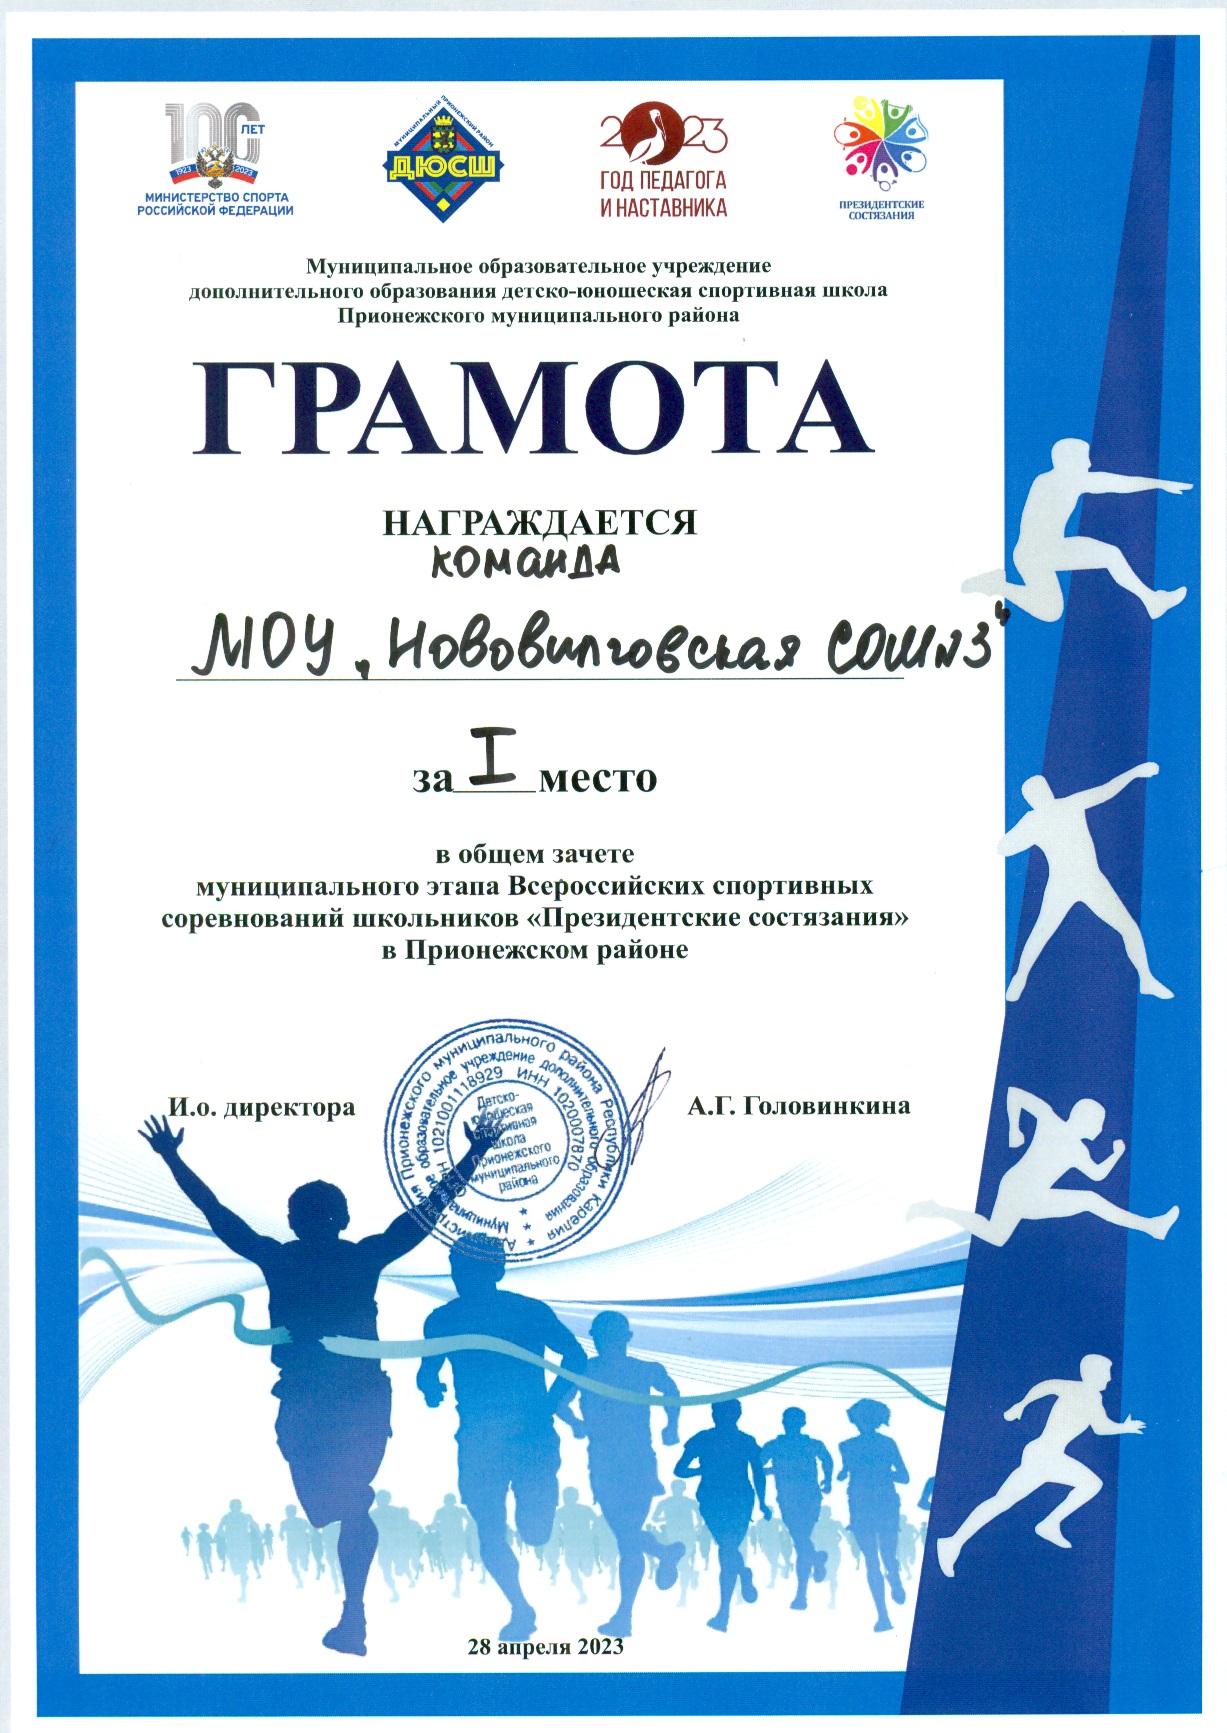 1 место в общем зачёте муниципального этапа Всероссийских спортивных соревнований школьников "Президентские состязания"